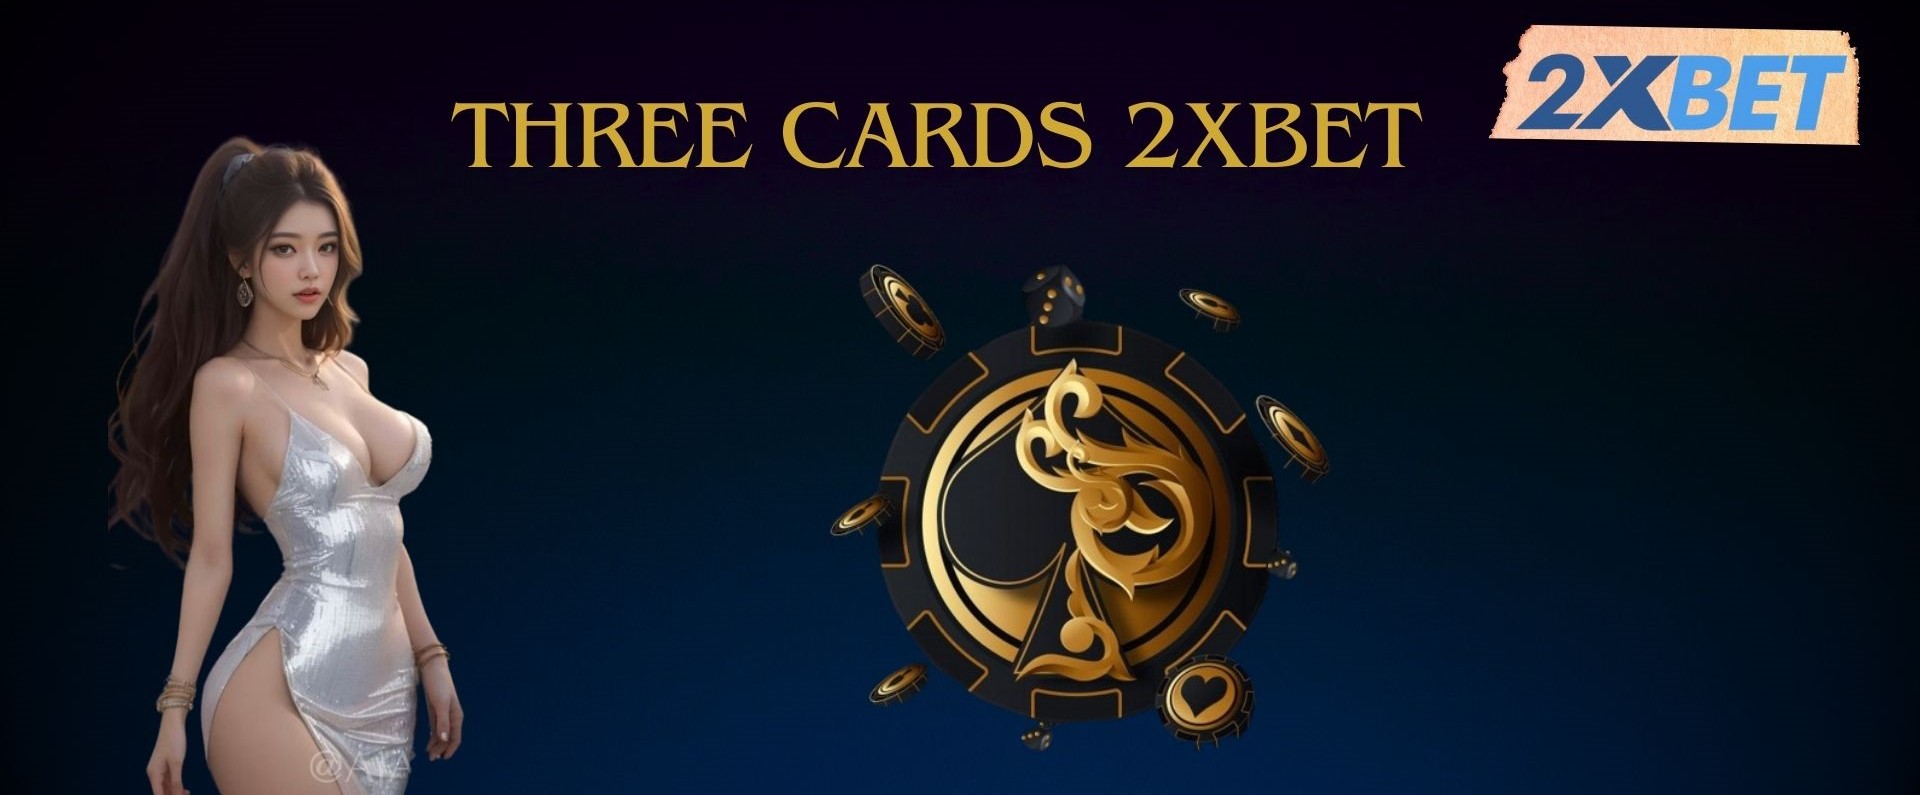 Về game bài Three cards 2XBET cực mới